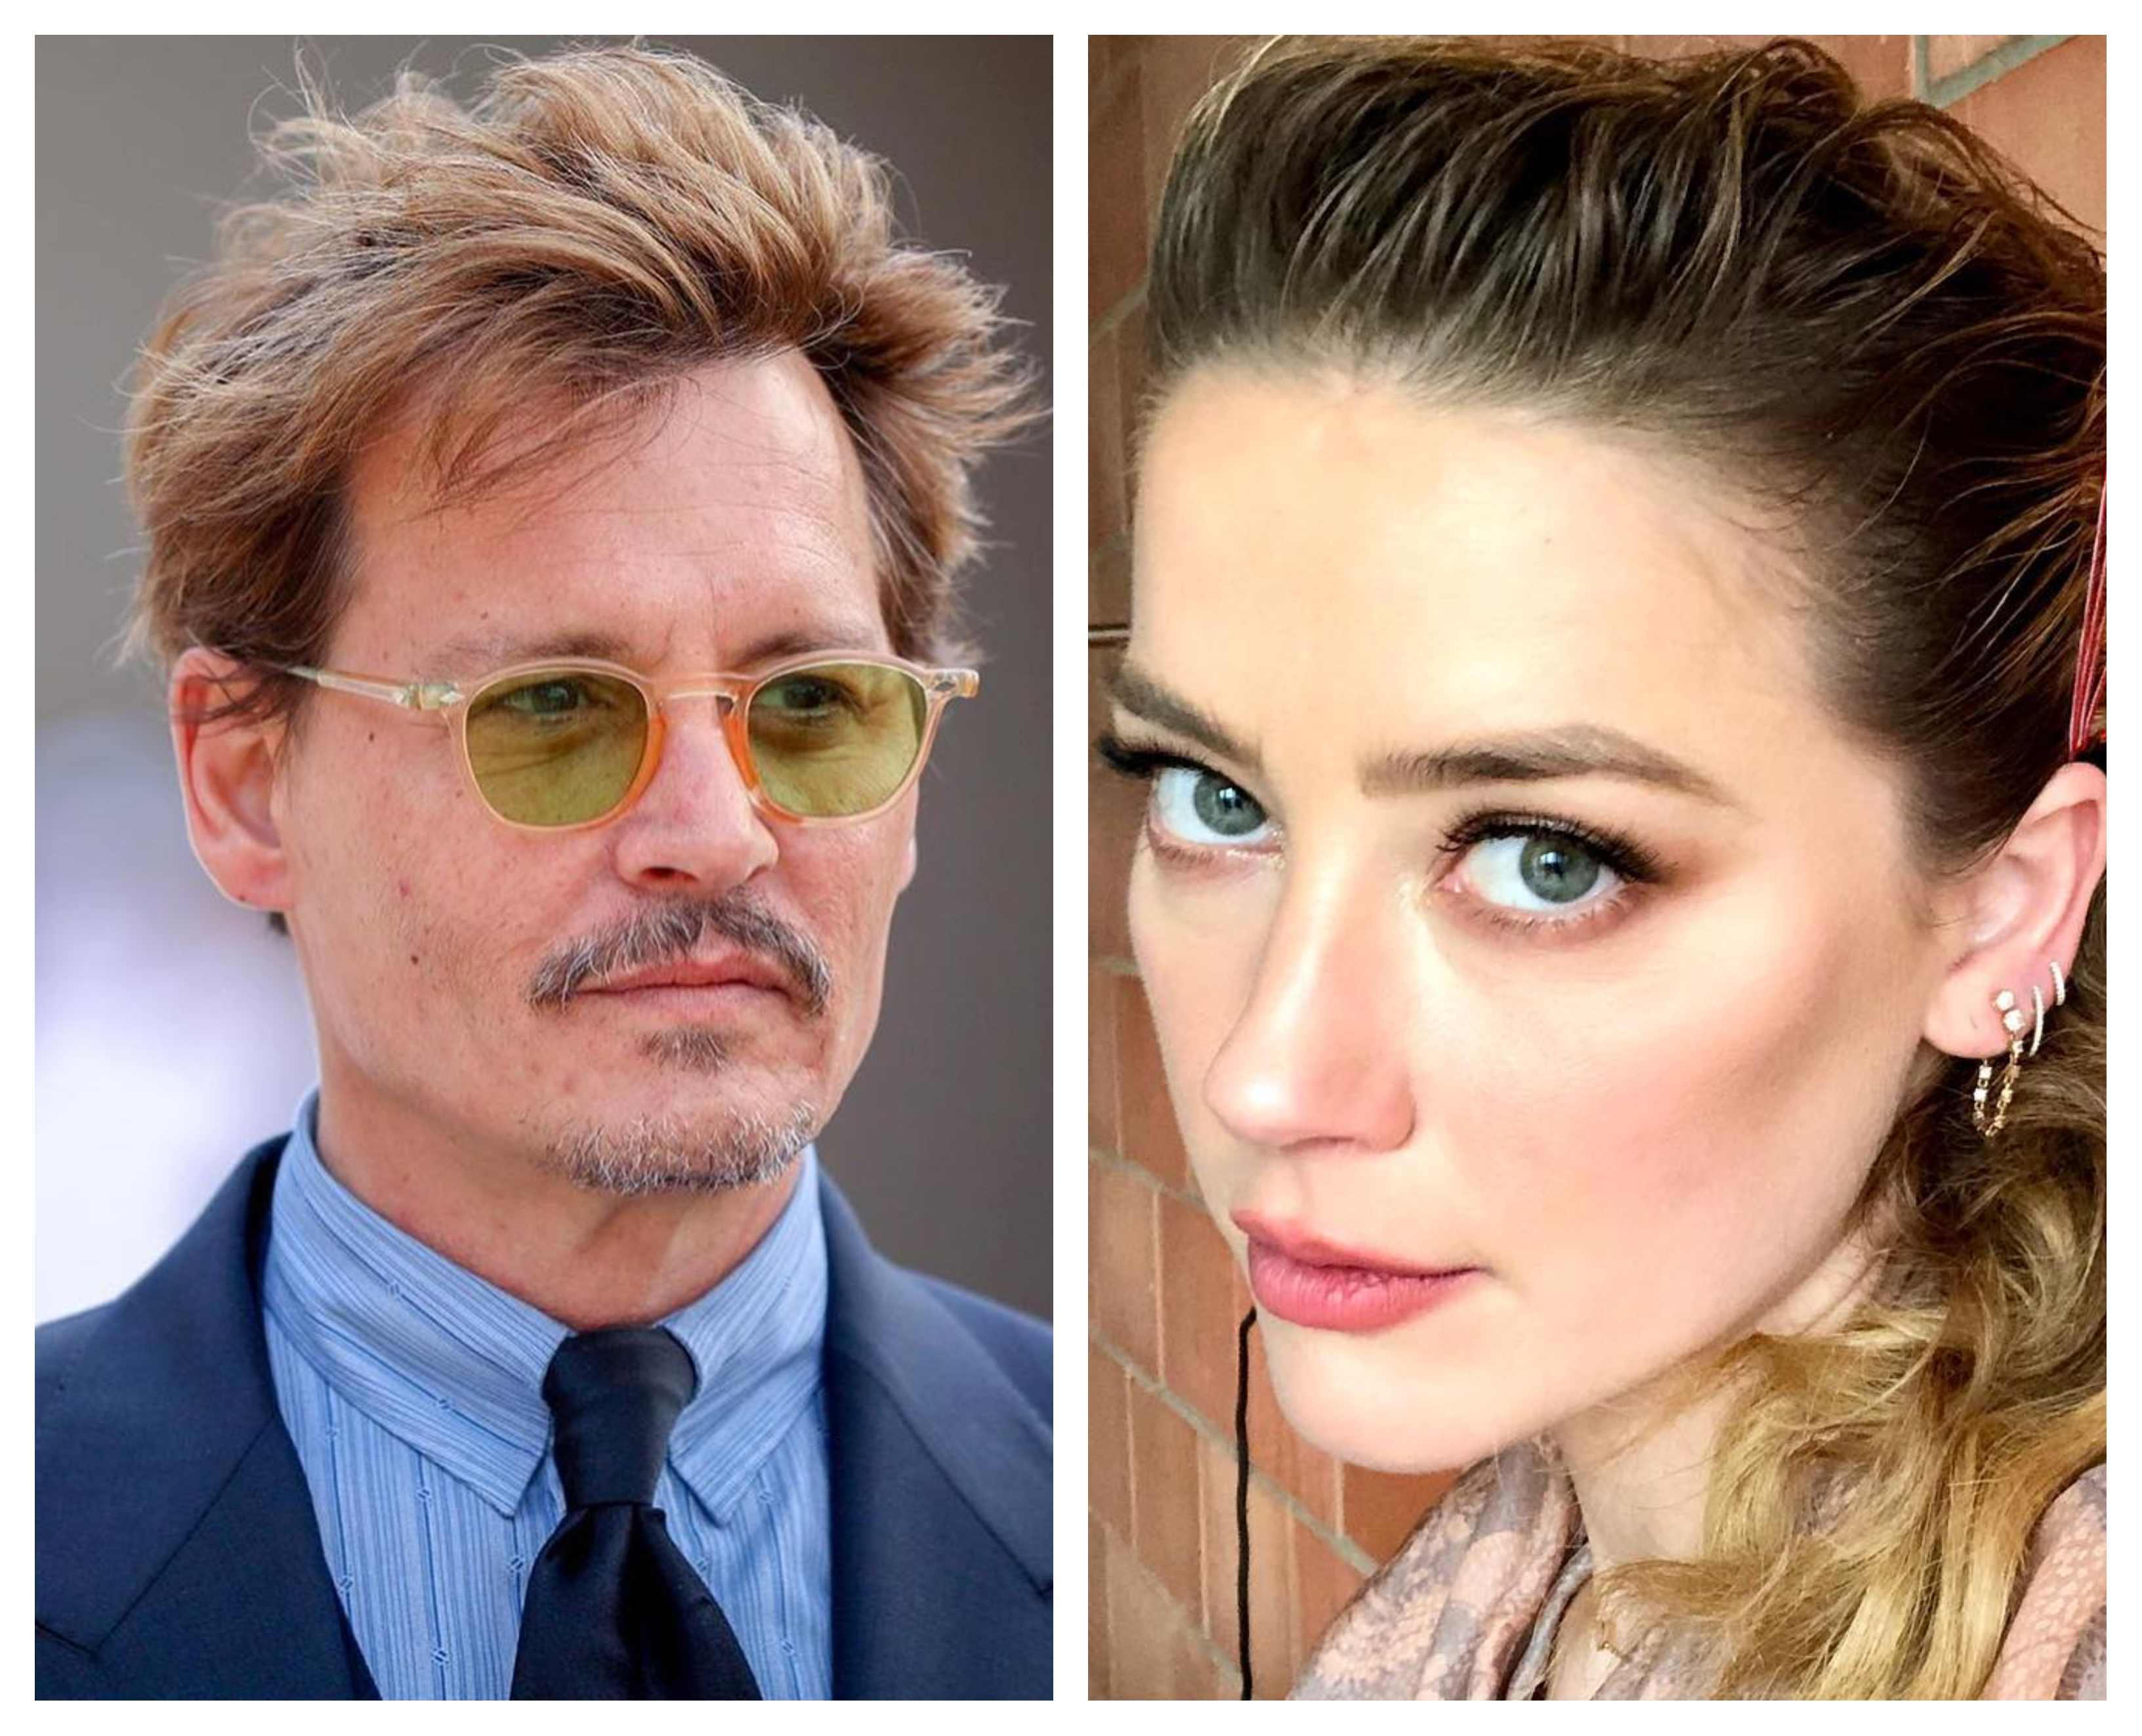 Caso Johnny Depp e Amber Heard vira documentário da Netflix: saiba detalhes, Zappeando Filmes